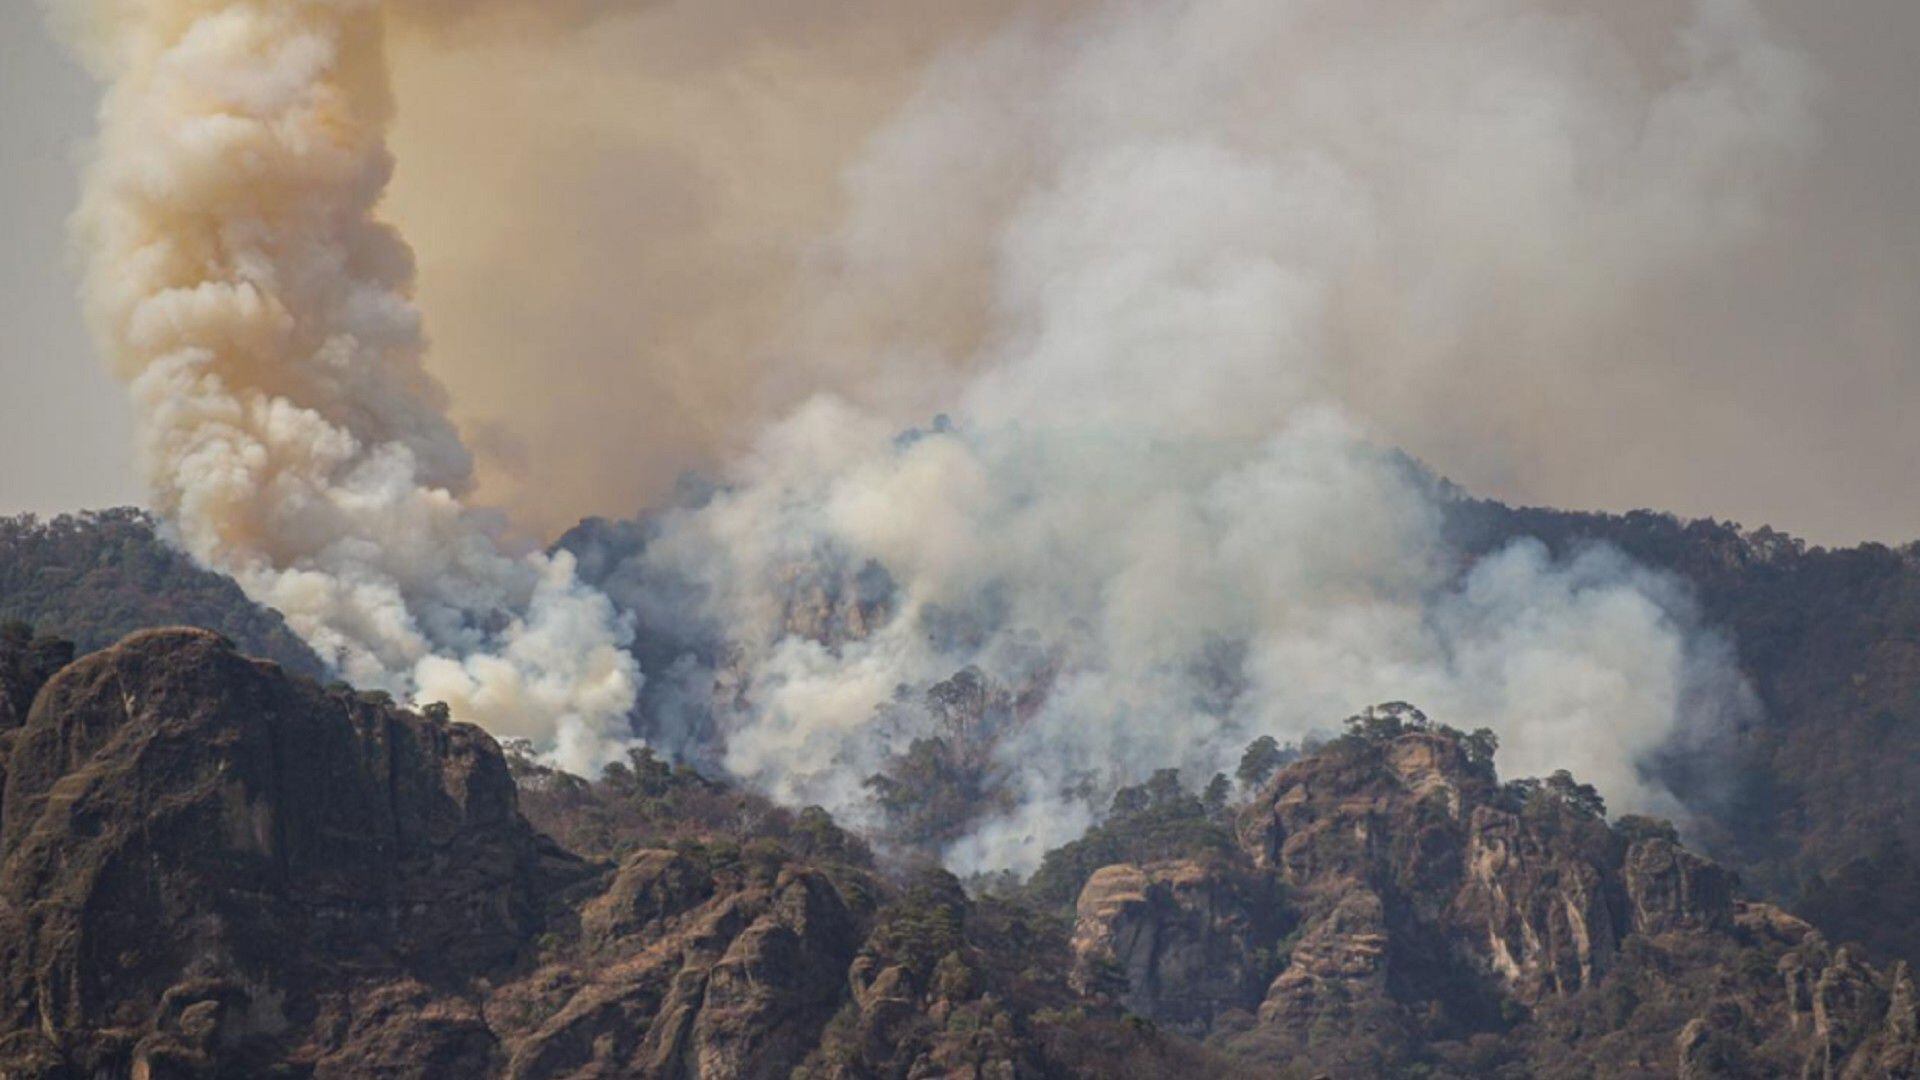 Incendio forestal - México - 27 de marzo - Portada